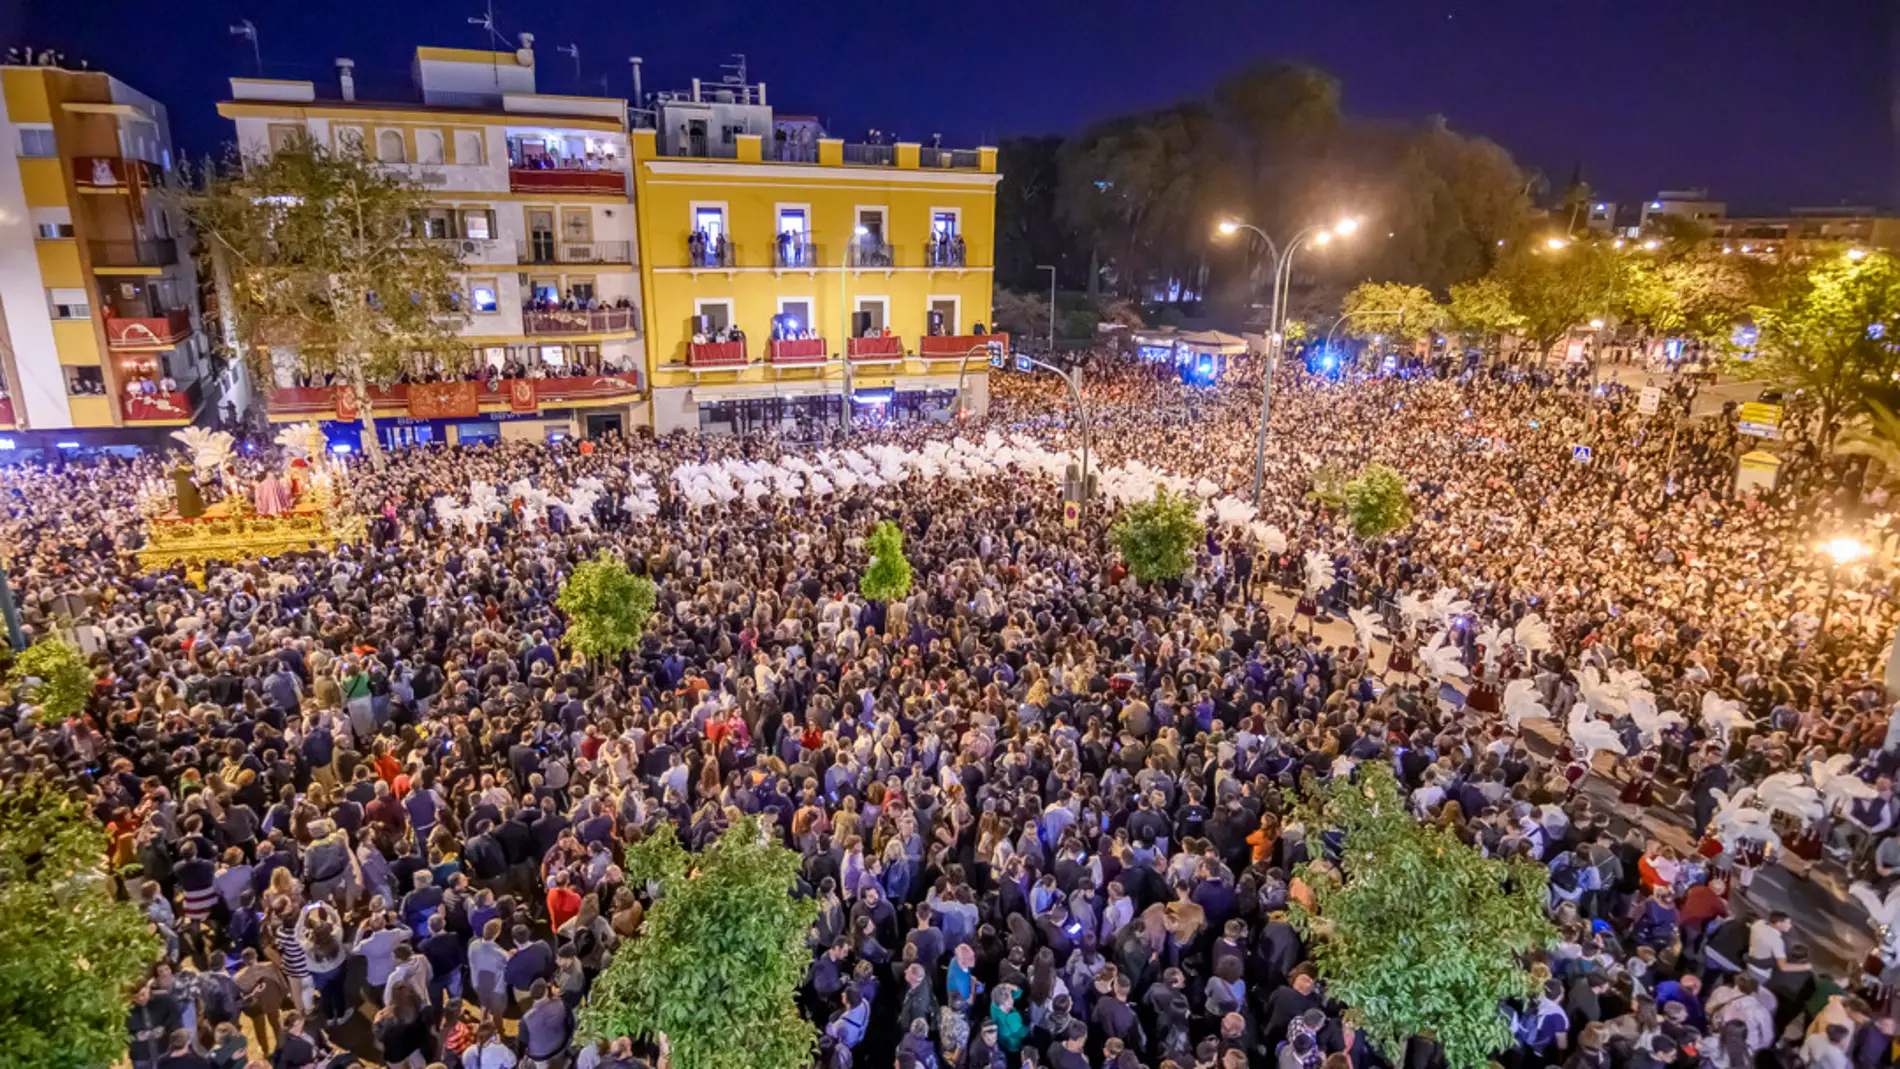 La emocionante 'Madrugá' de Sevilla concluye tras convocar a decenas de  miles de personas